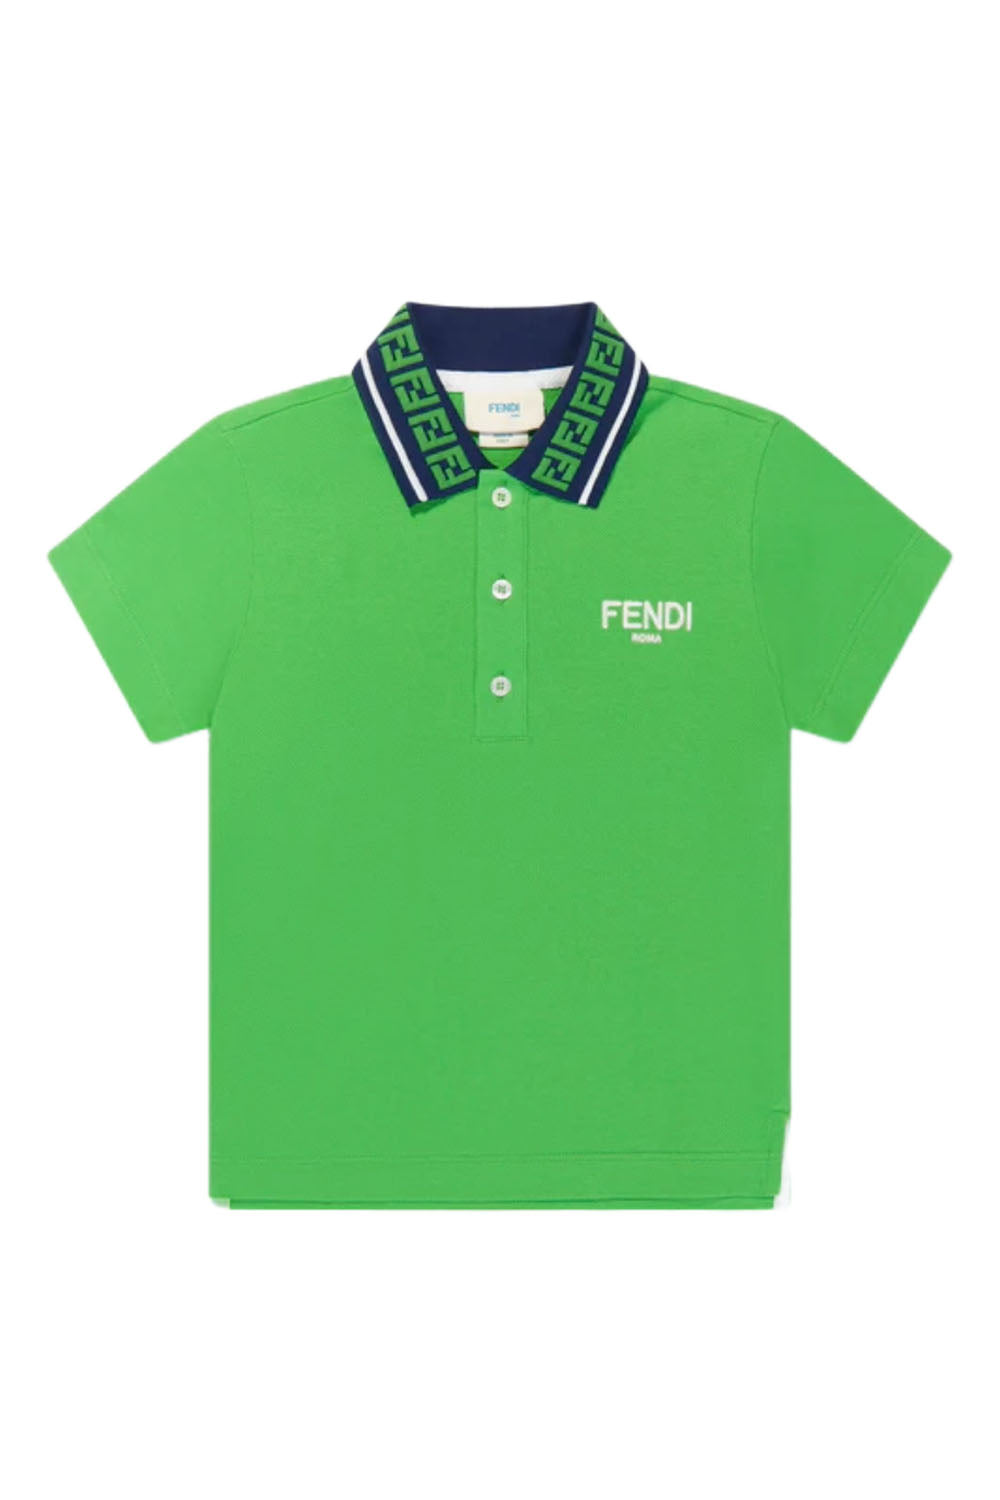 Fendi Polo Shirt for Boys Fendi Polo Shirt for Boys Fendi Polo Shirt for Boys Maison7